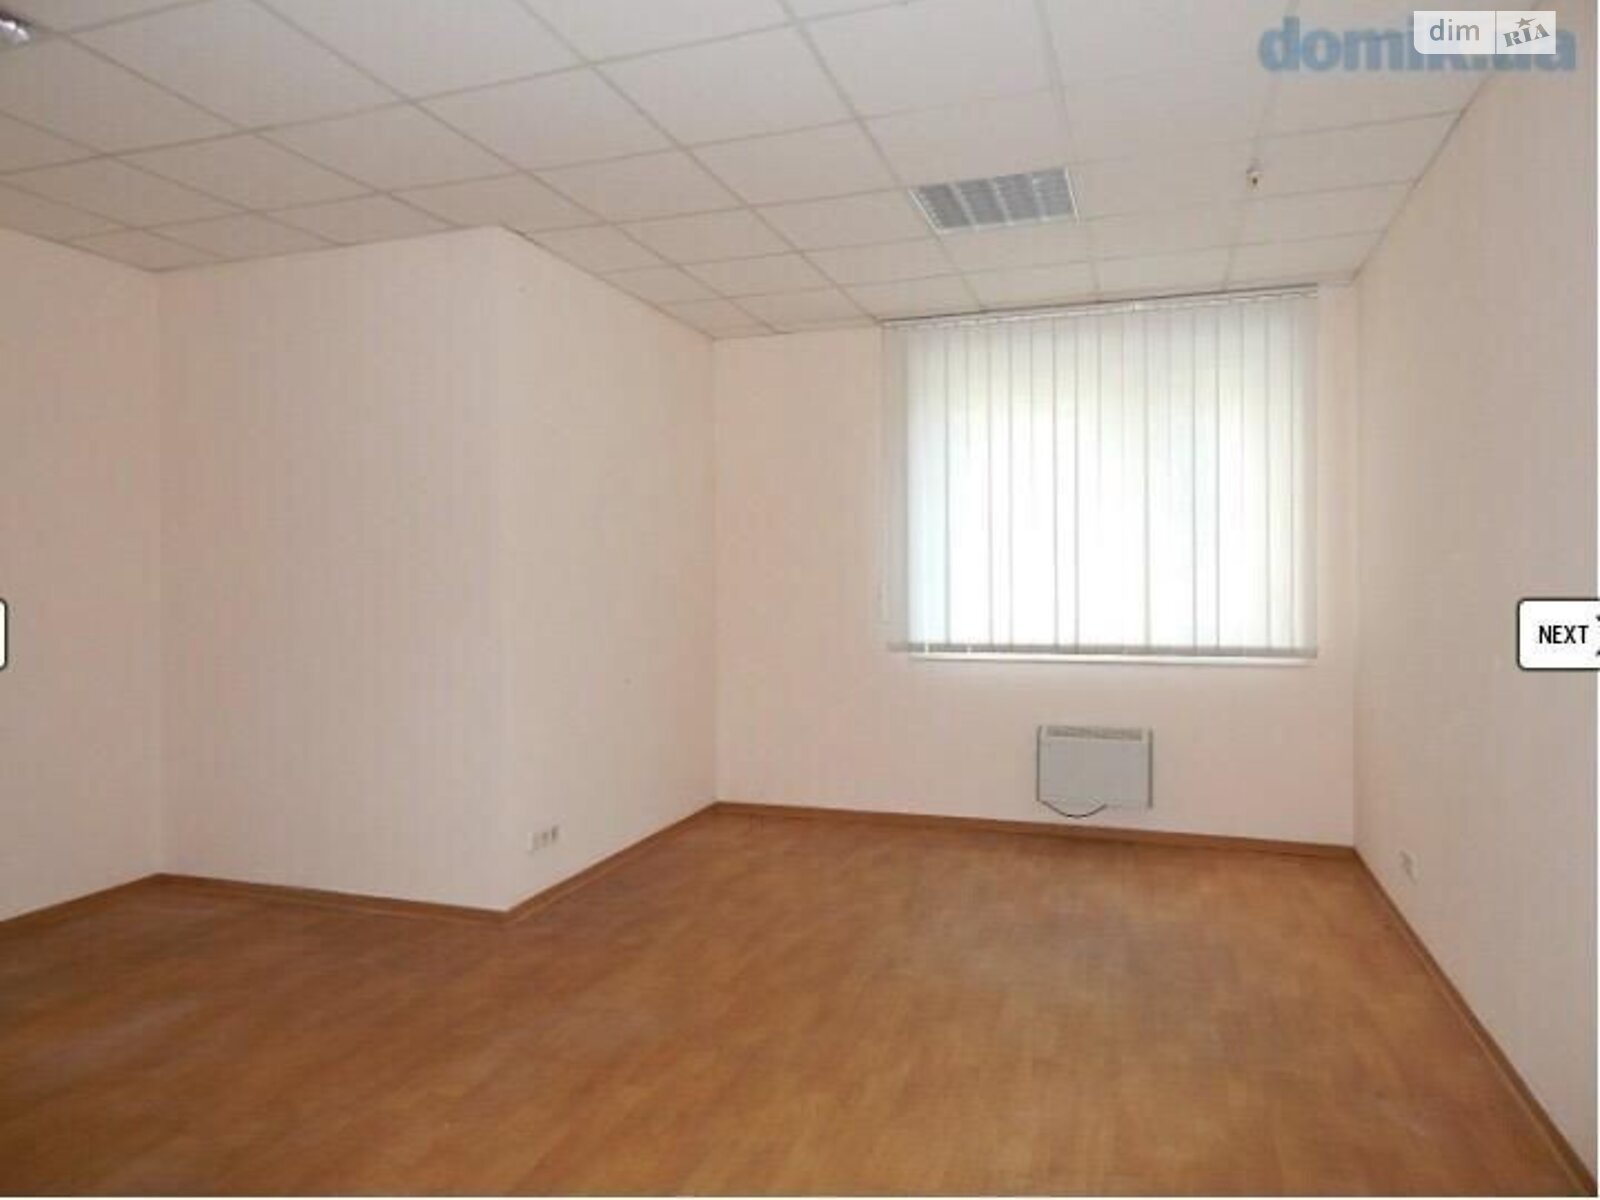 Аренда офисного помещения в Днепре, Хмельницкого Богдана проспект 139, помещений - 4, этаж - 1 фото 1